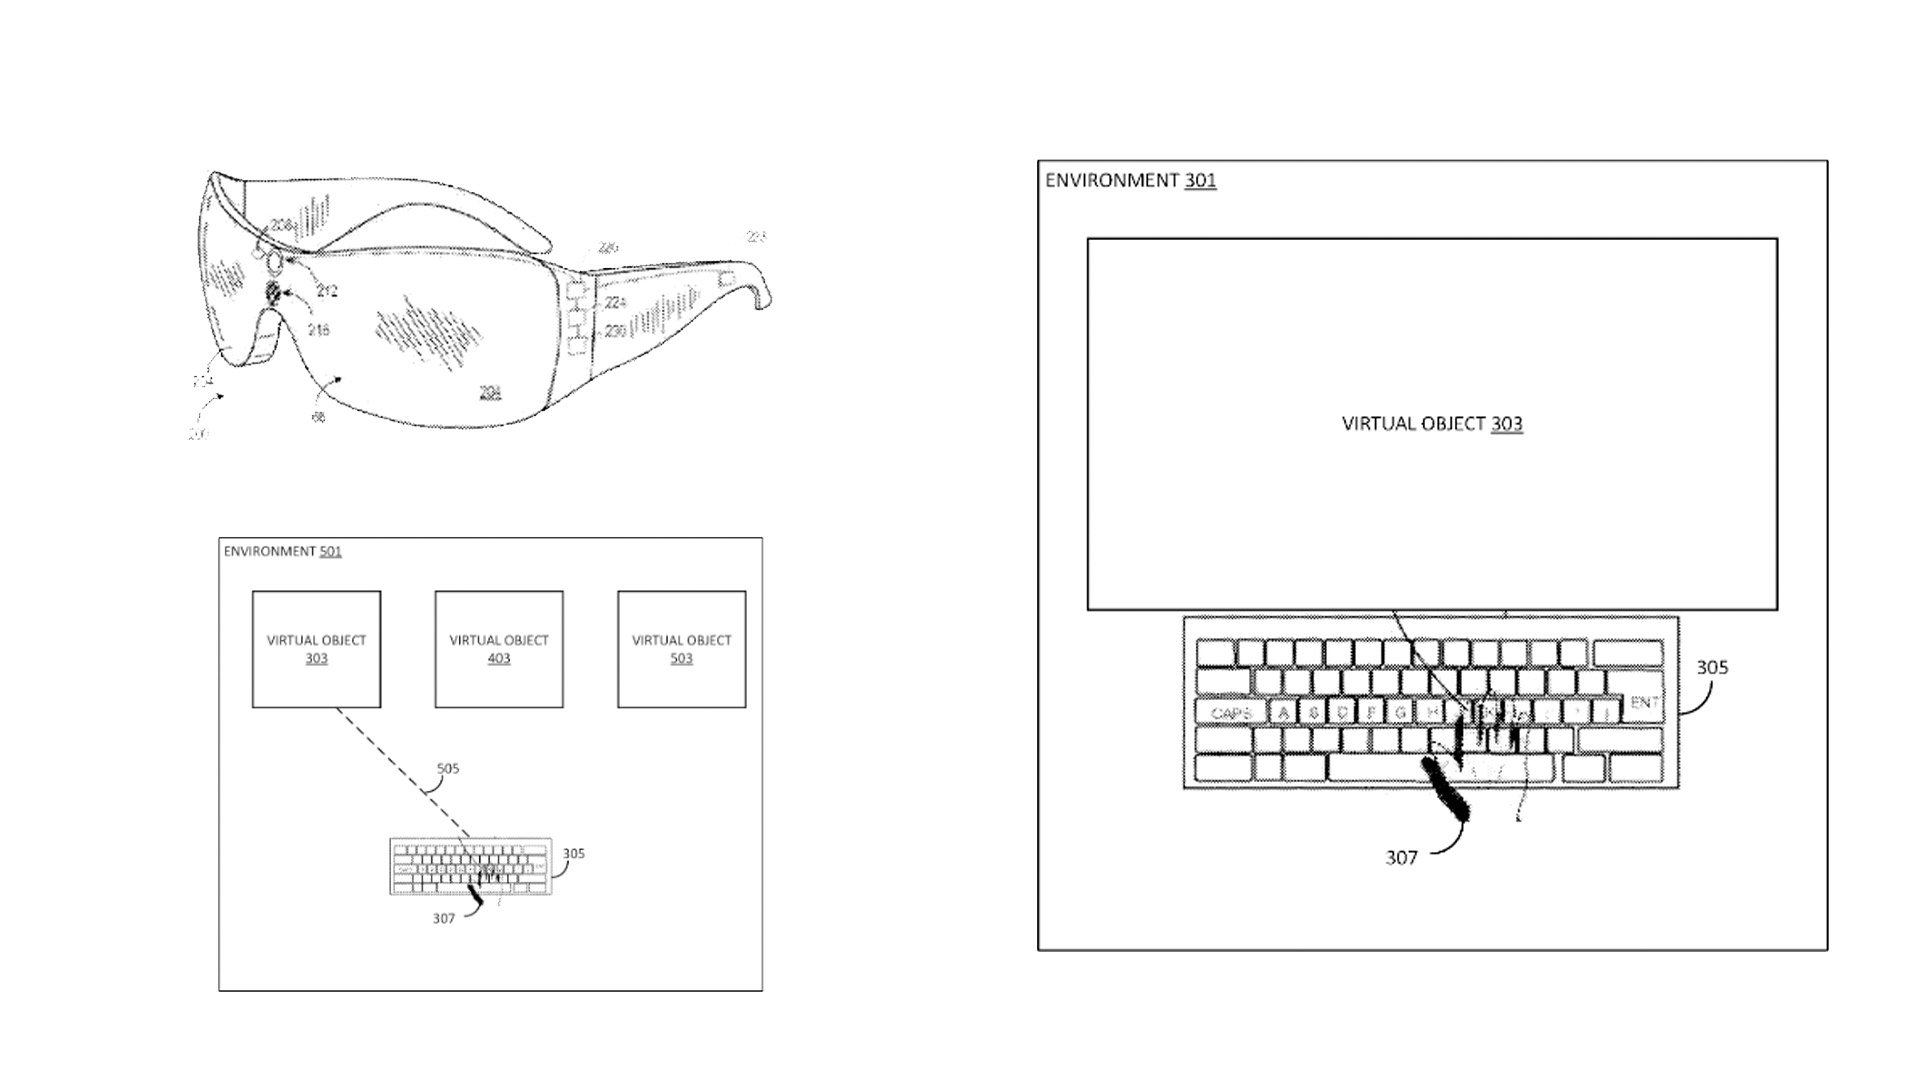 Patente de HoloLens para teclados virtuales